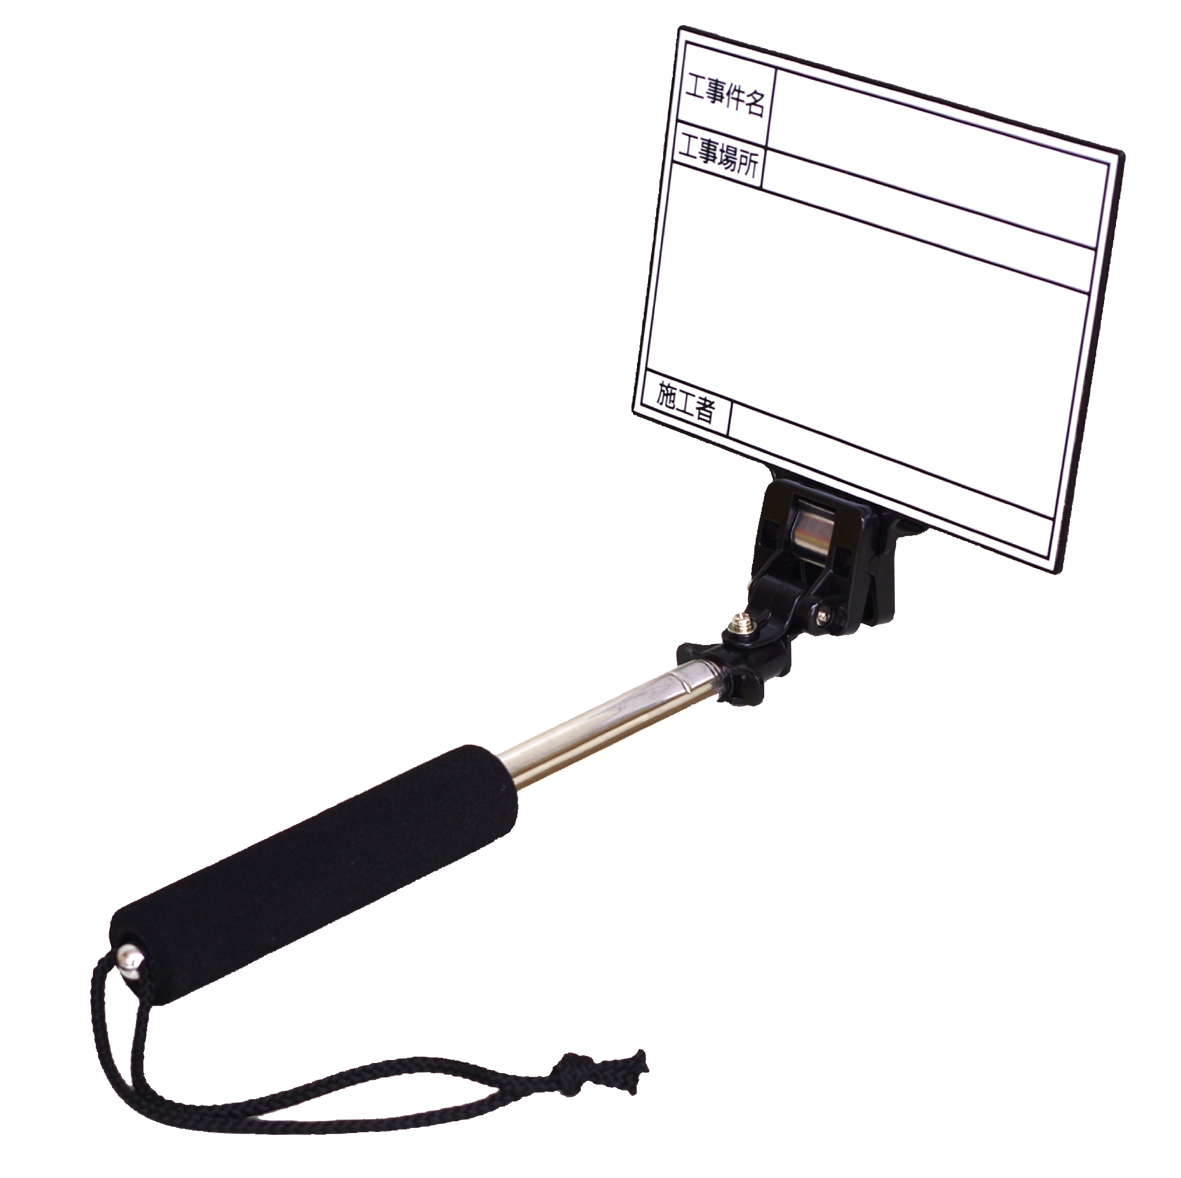 【特価商品】マイゾックス 携帯用黒板 ハンドプラスボード ホワイトタイプ HP-